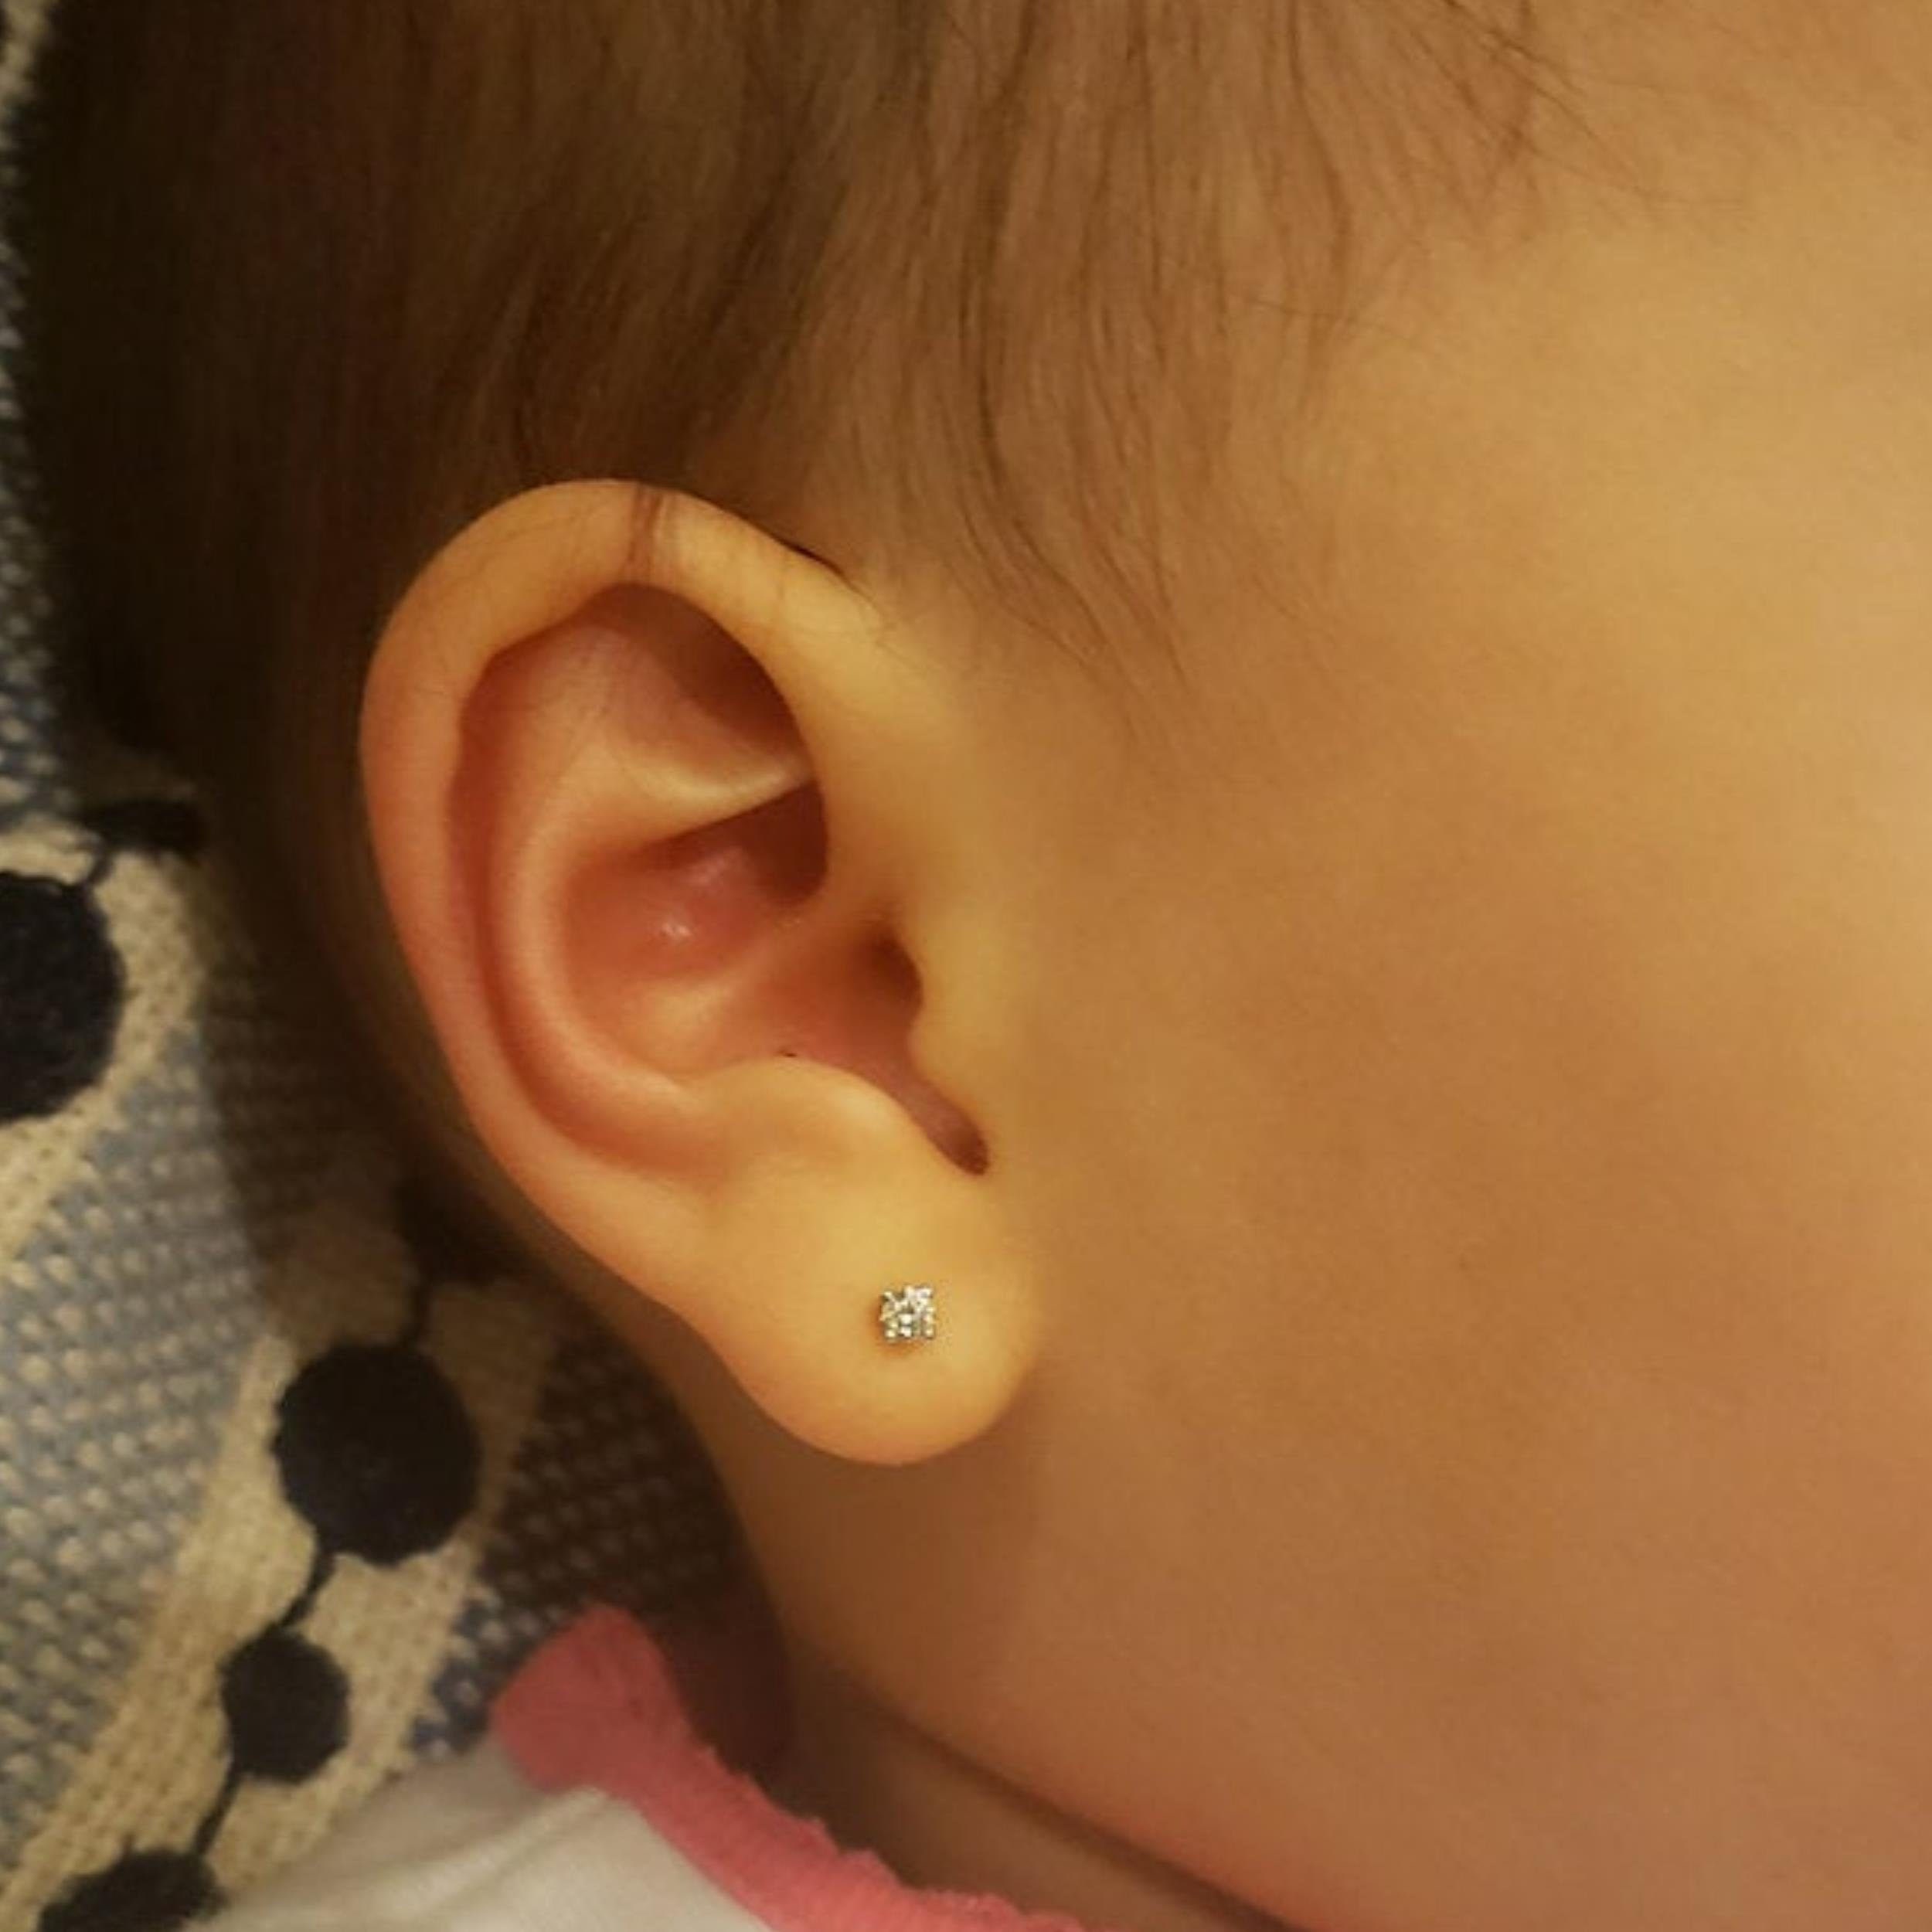 18K White Gold Diamond Cut Half Ball Stud Earrings - Baby Girl 6 mm | eBay